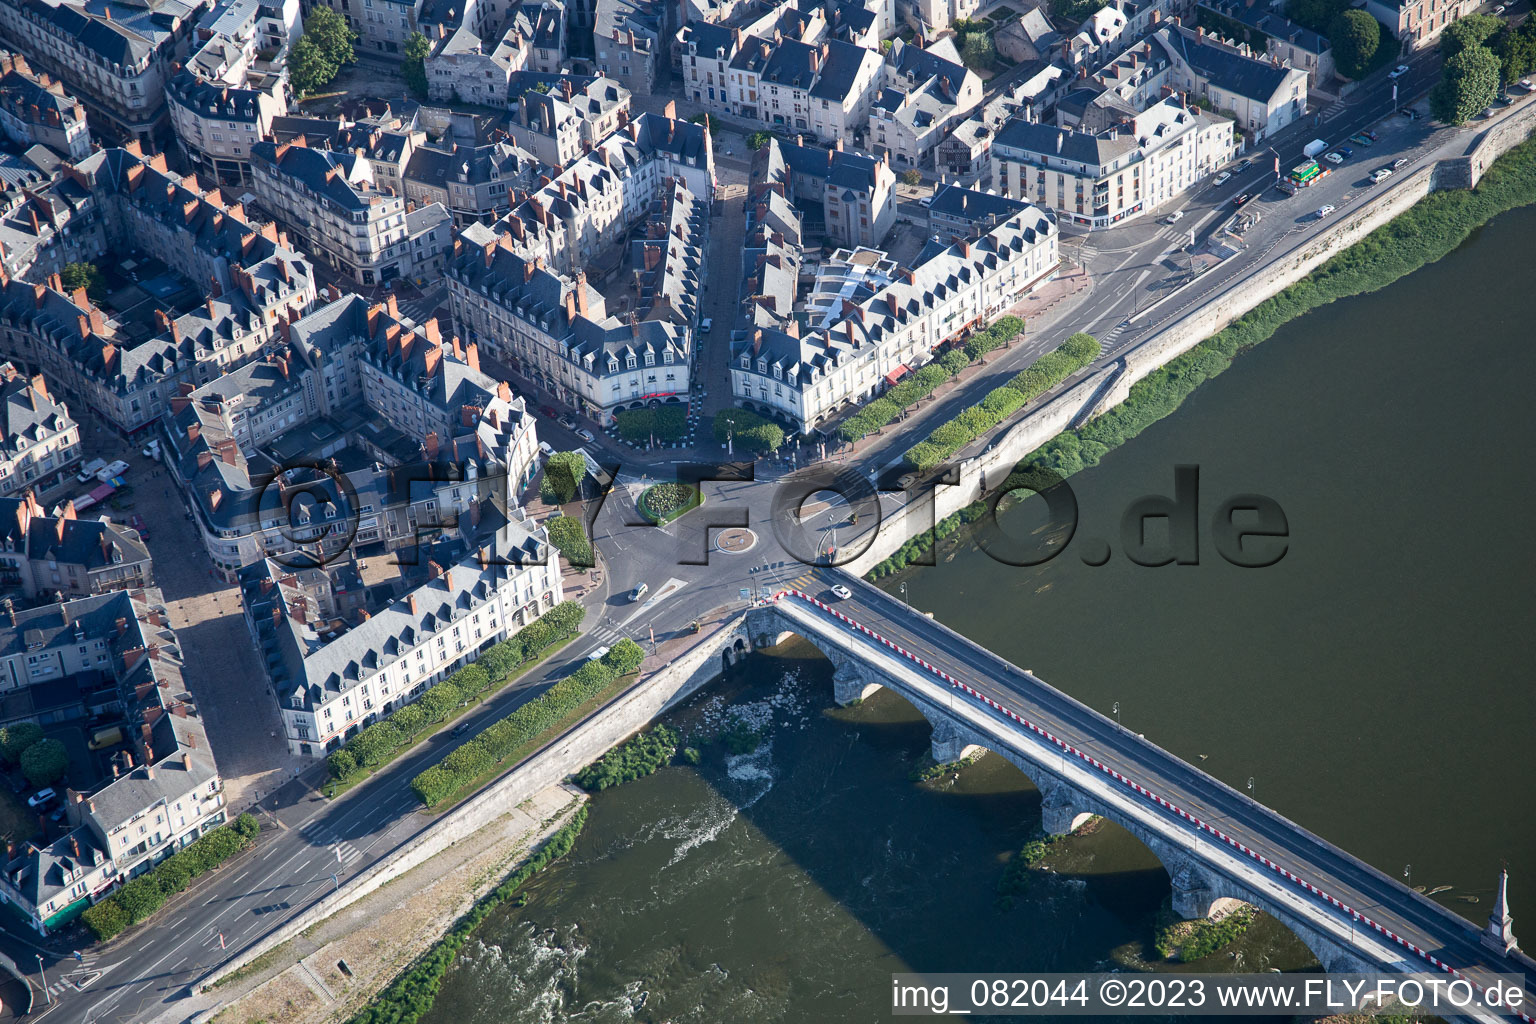 Blois im Bundesland Loir-et-Cher, Frankreich aus der Drohnenperspektive